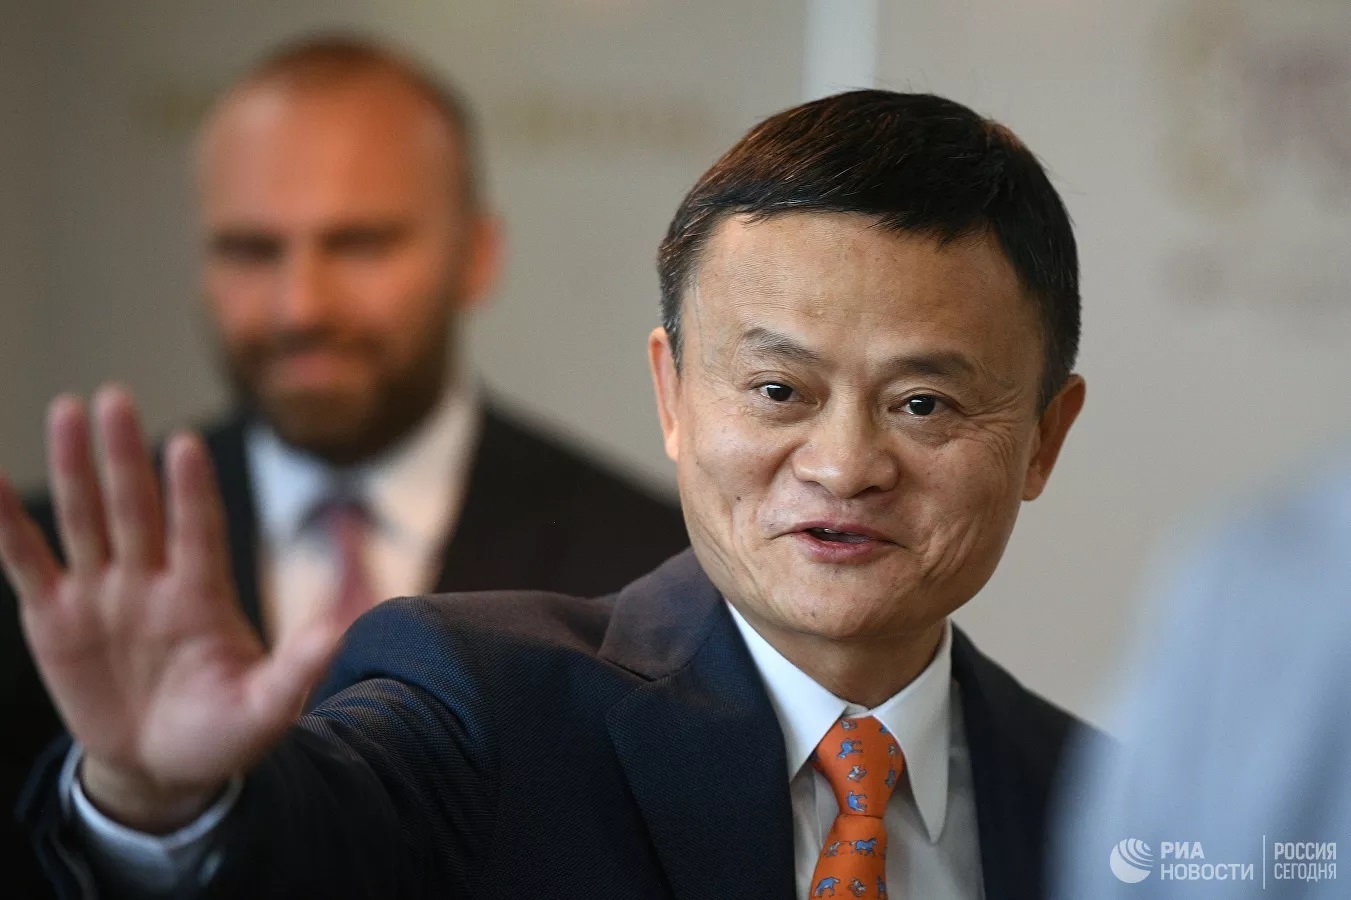 Alibaba,Jack Ma,tỷ phú